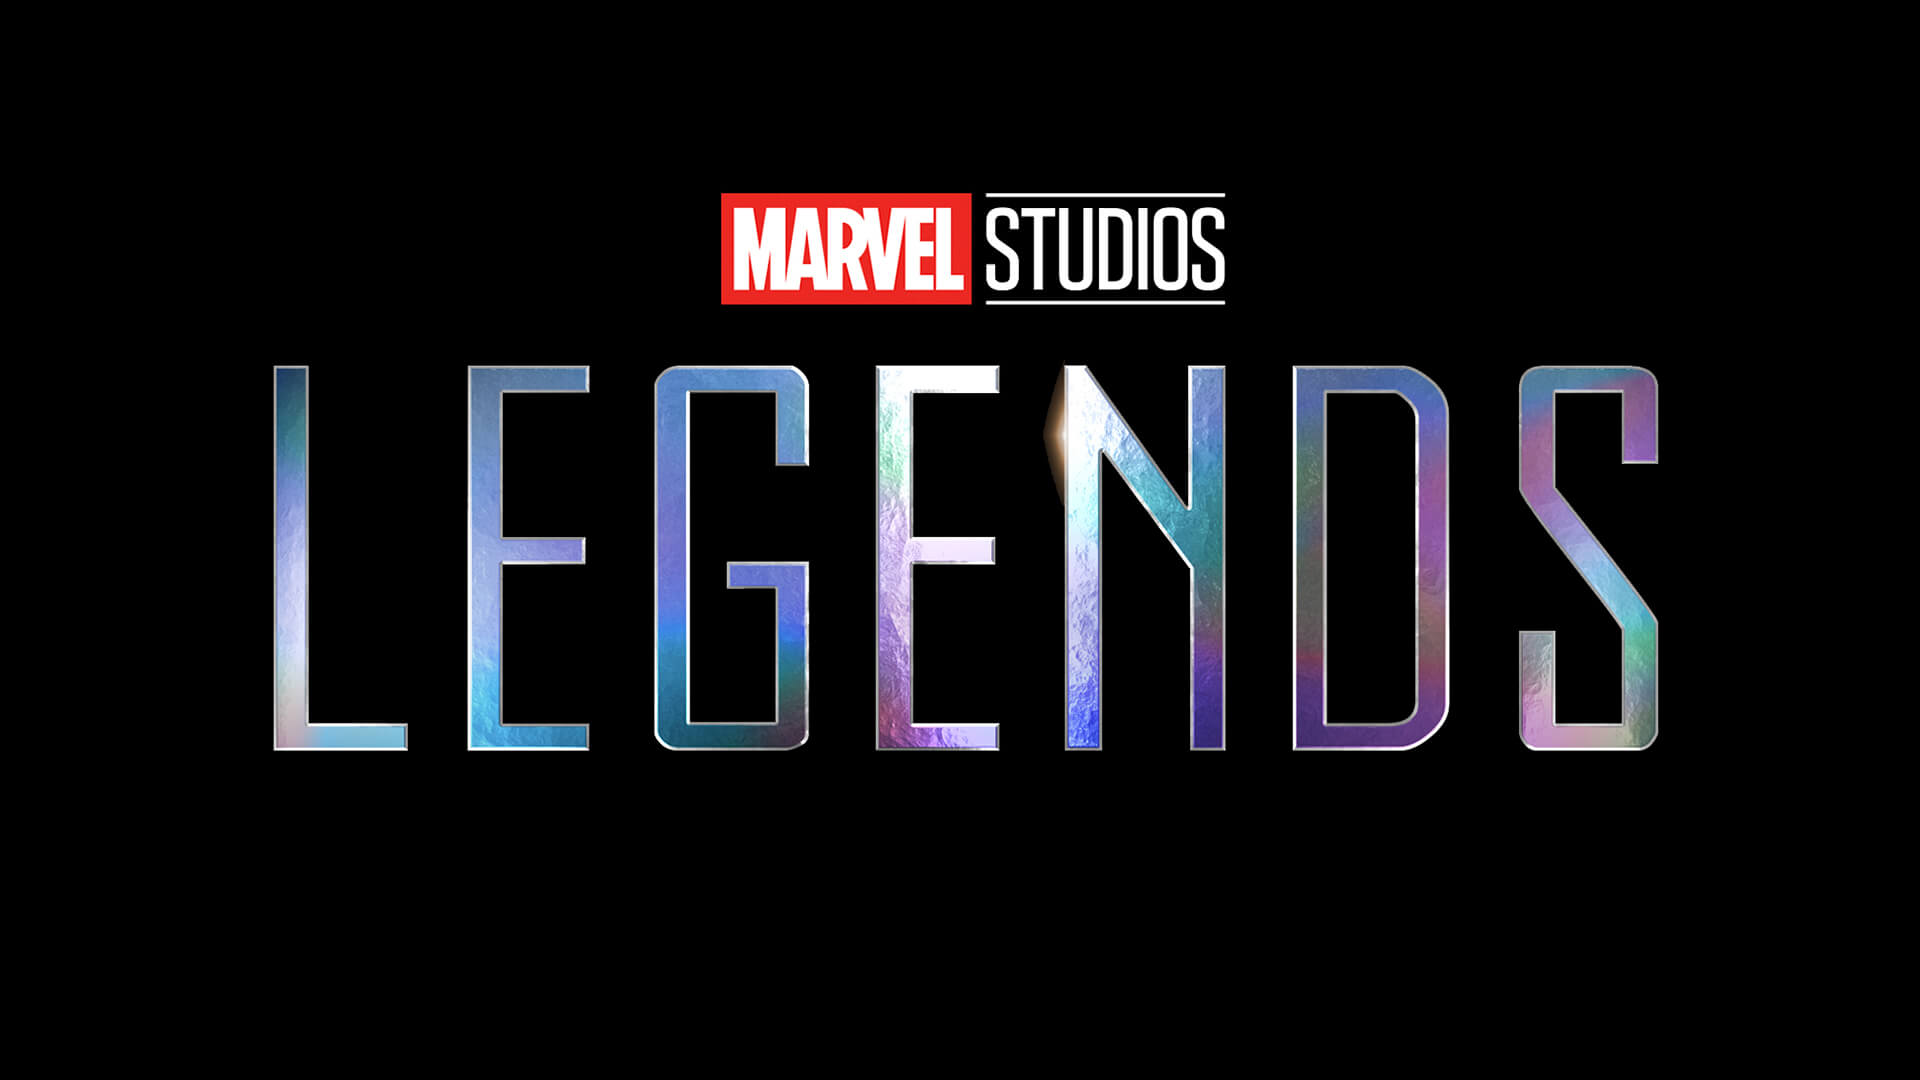 Marvel Studios Reveals Another New Disney+ Series ‘Legends’